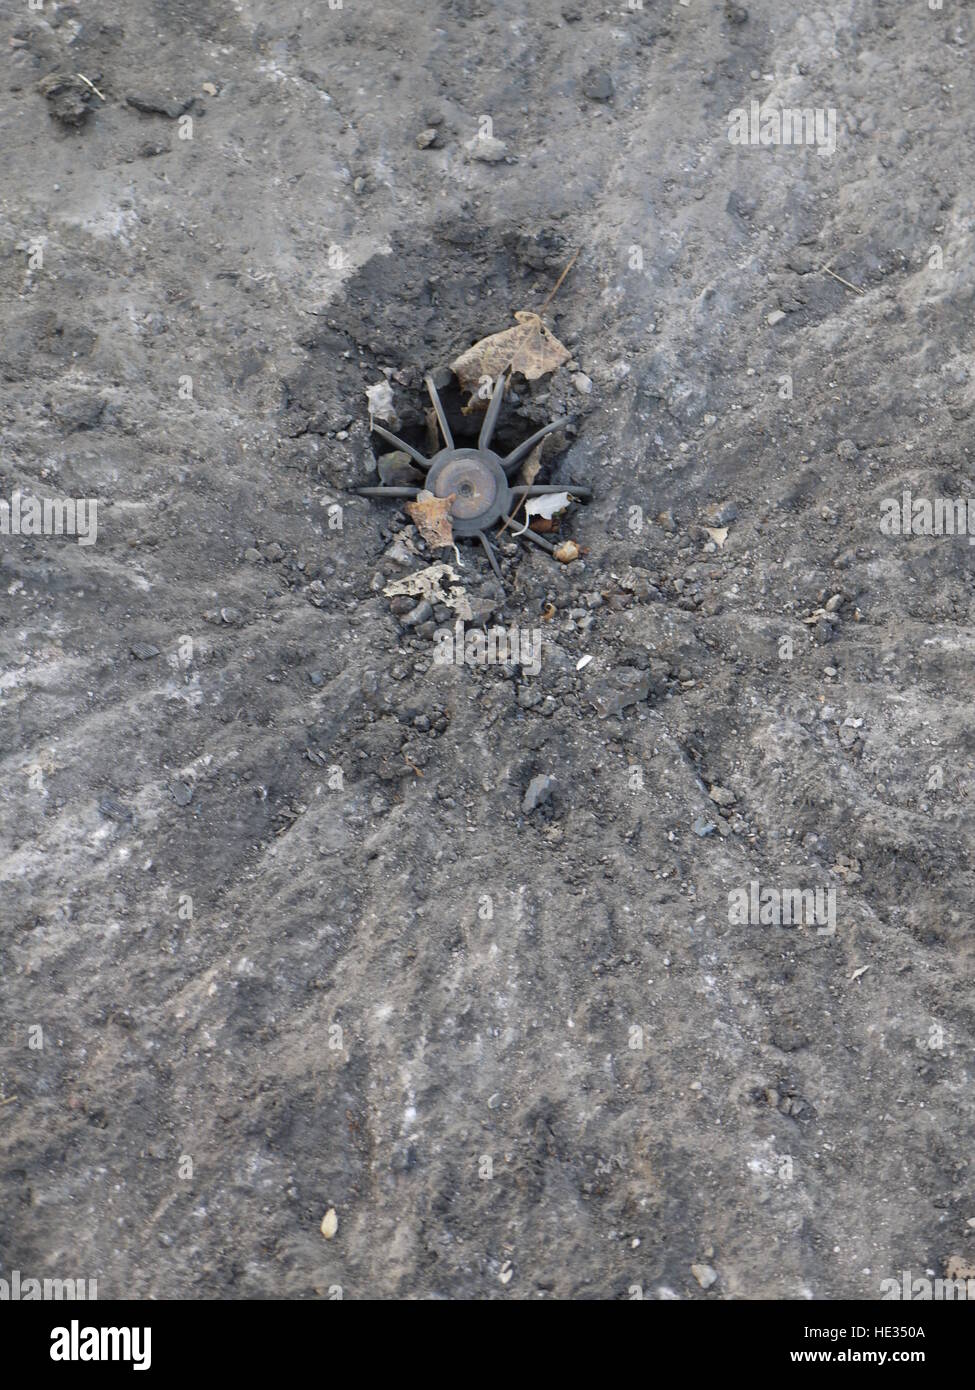 Un des obus de mortier sont tombés sur la route près de Donetsk, dans l'Est de l'Ukraine Banque D'Images